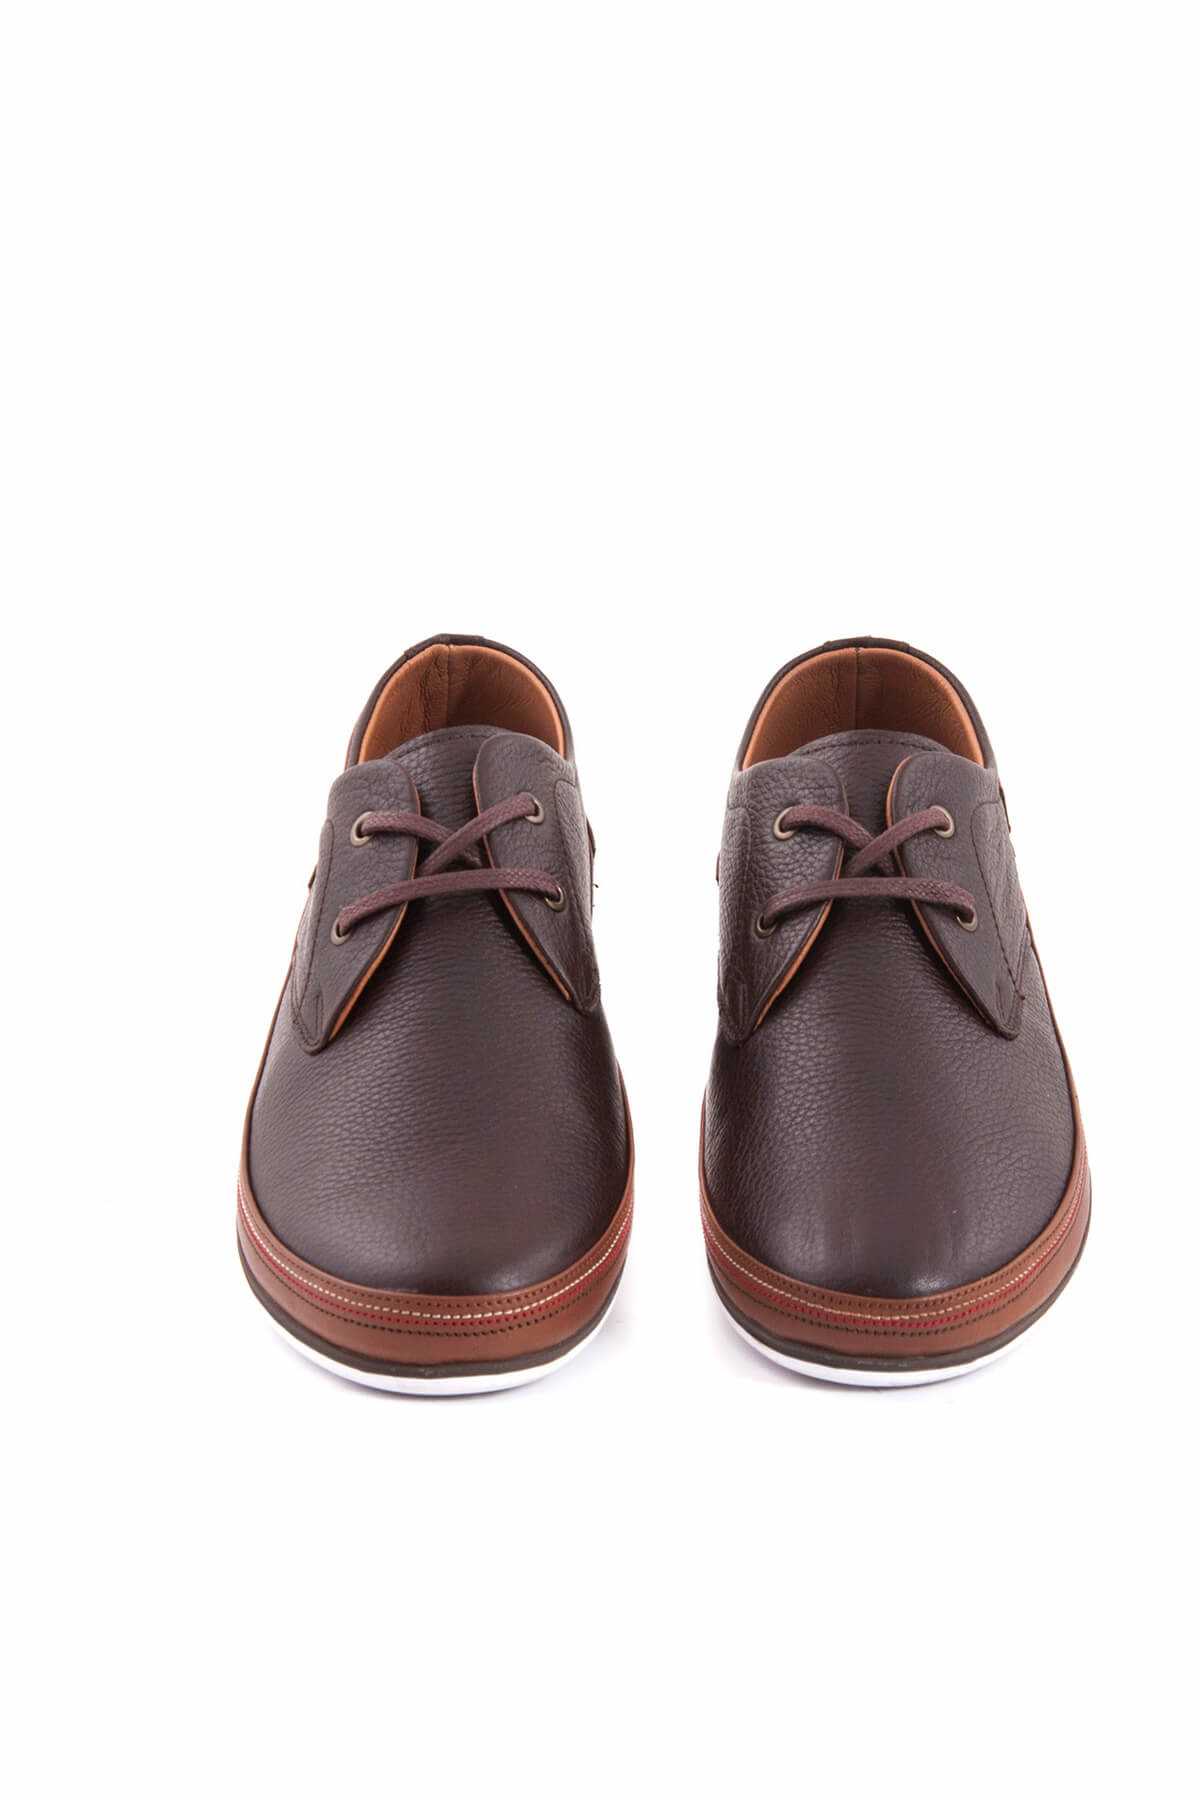 کفش کلاسیک مردانه اسپرت جدید برند کمال تانجا رنگ قهوه ای کد ty792917